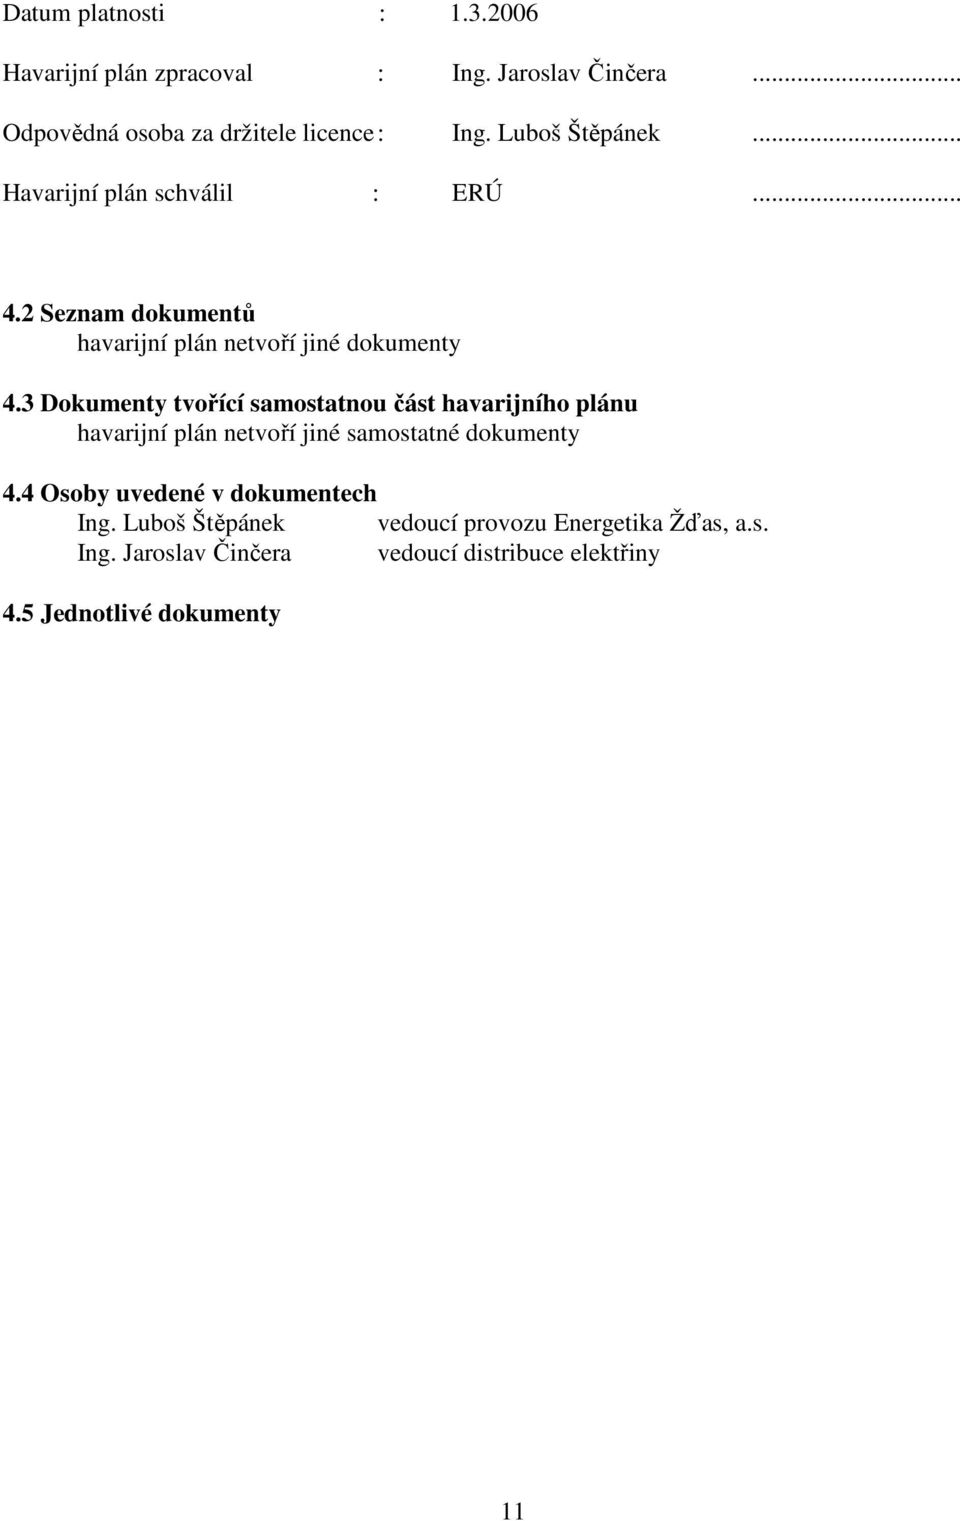 3 Dokumenty tvořící samostatnou část havarijního plánu havarijní plán netvoří jiné samostatné dokumenty 4.